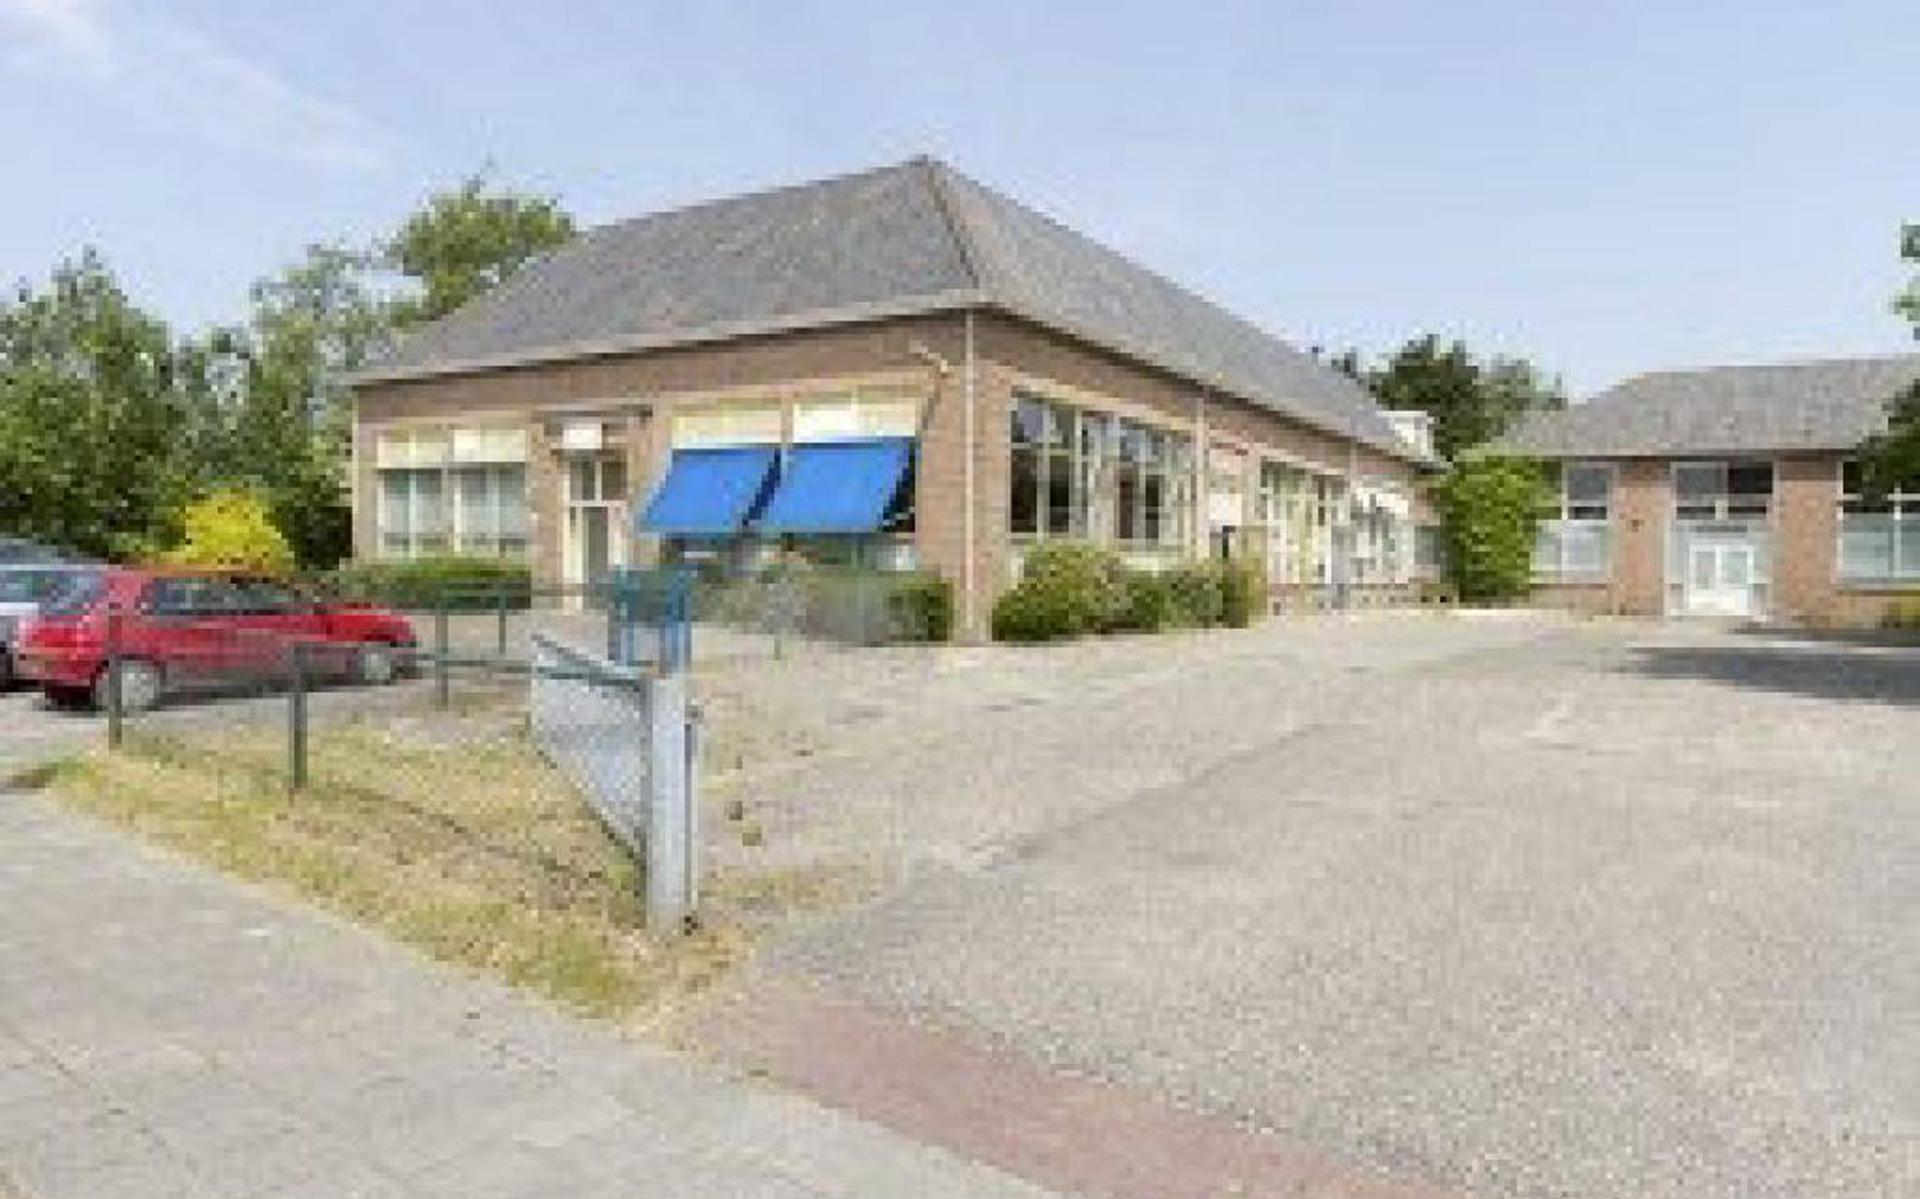 Heerlijk verkopen Gestreept School Tzummarum te koop voor euro - Leeuwarder Courant